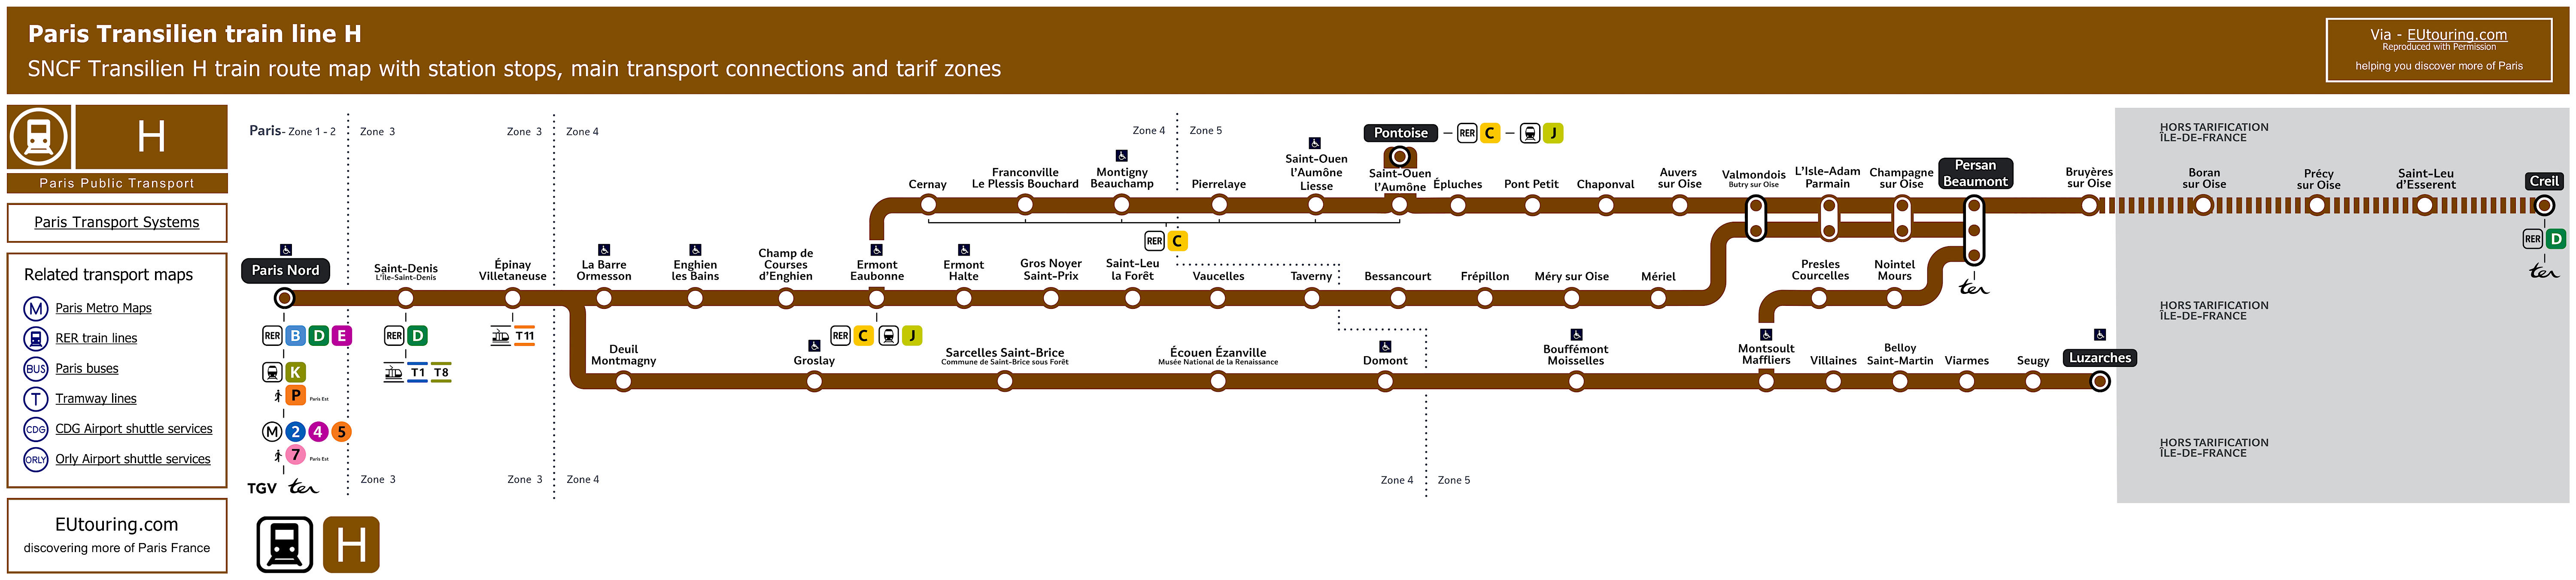 Transilien Map Train Map Paris Metro Paris Map | Sexiz Pix